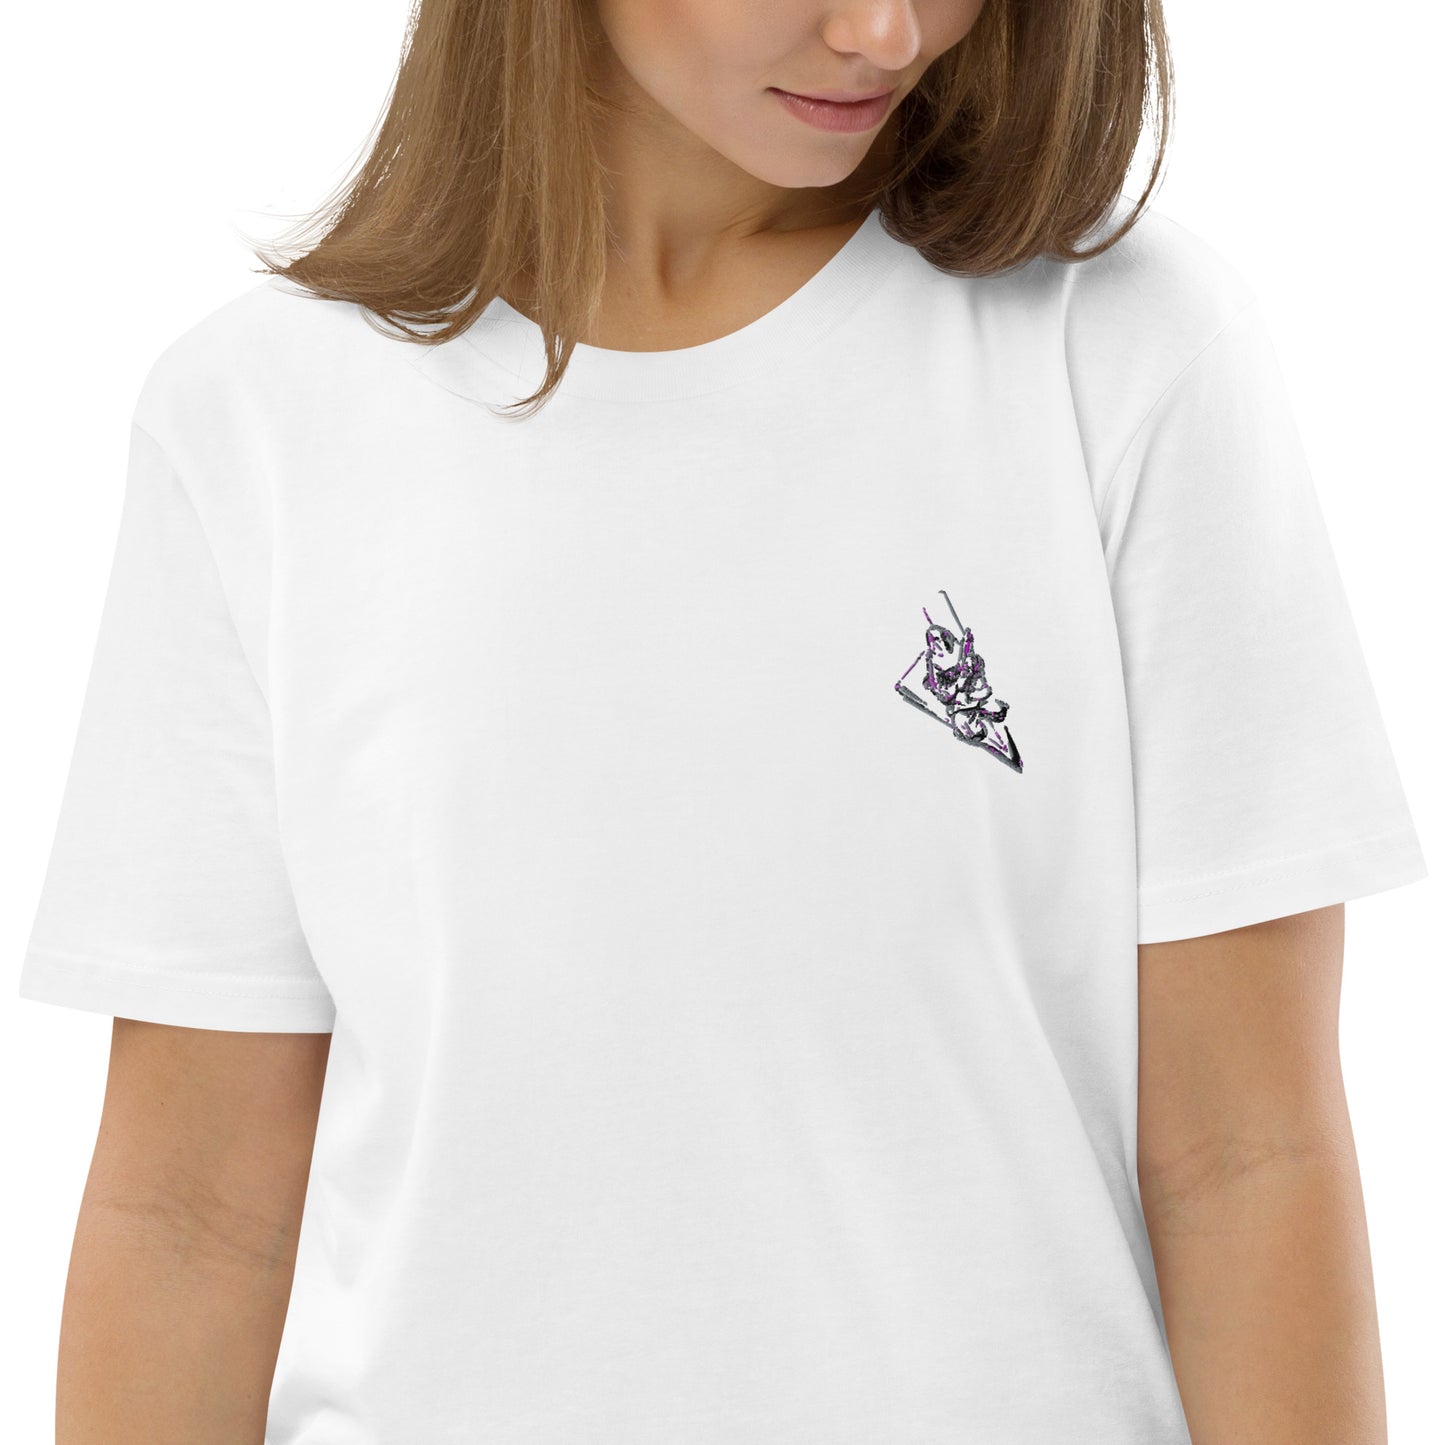 T-shirt unisexe en coton bio Brodé Ribellu & Corse Stylisée